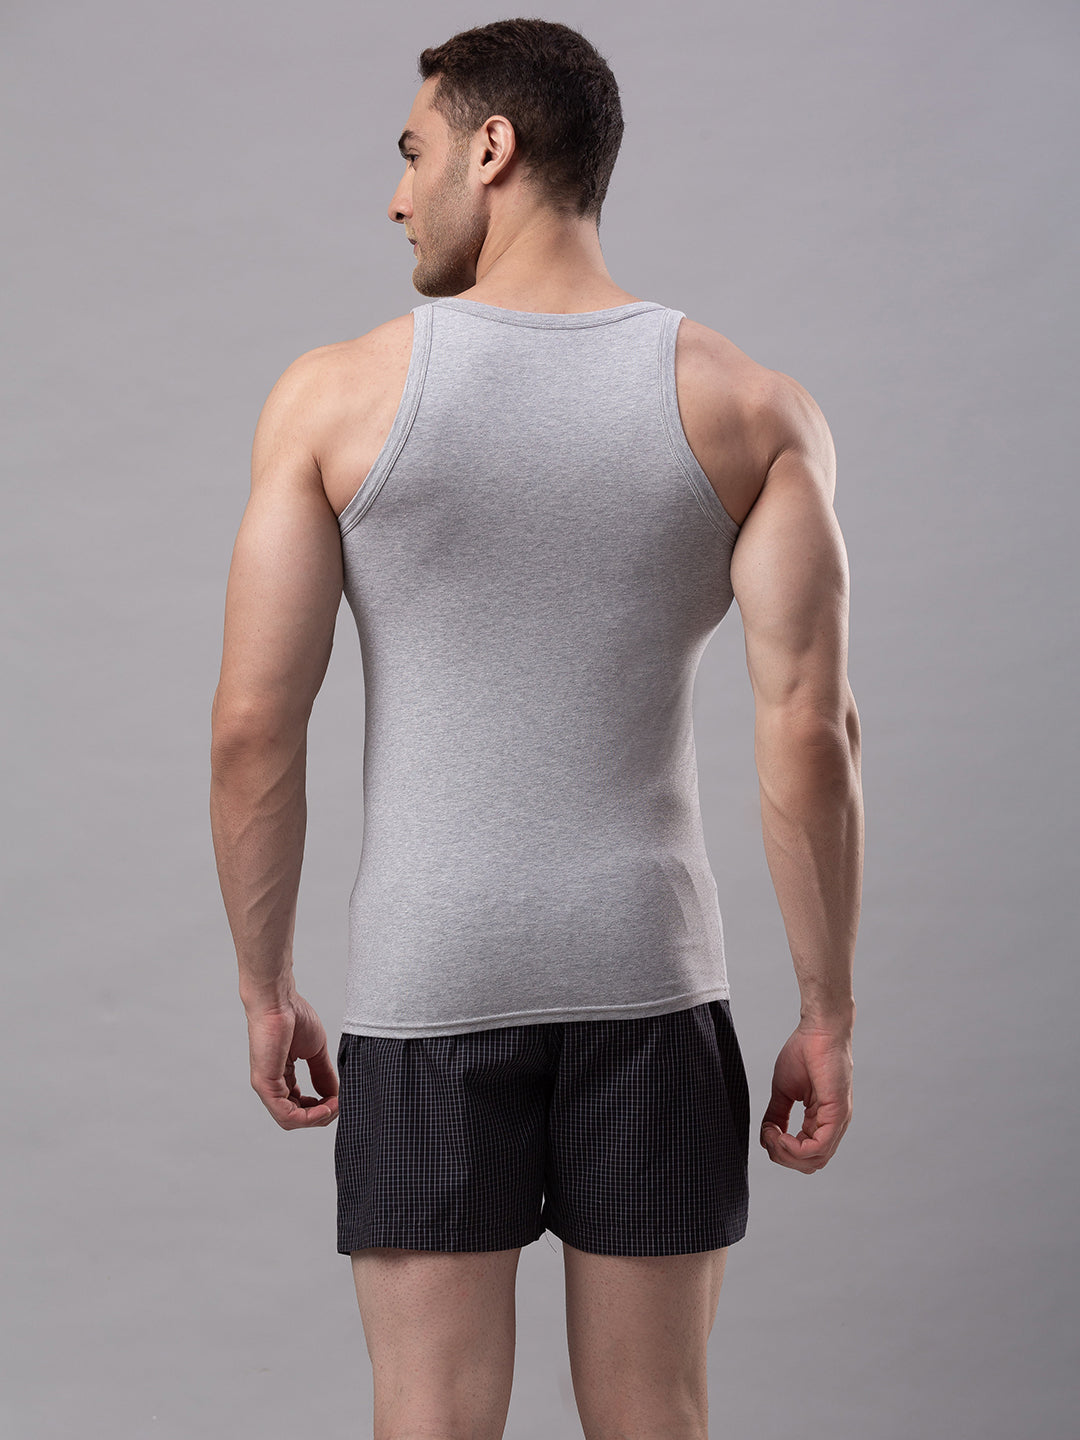 Grey Cotton Lycra Vest (Square Neck)- UnderJeans by Spykar